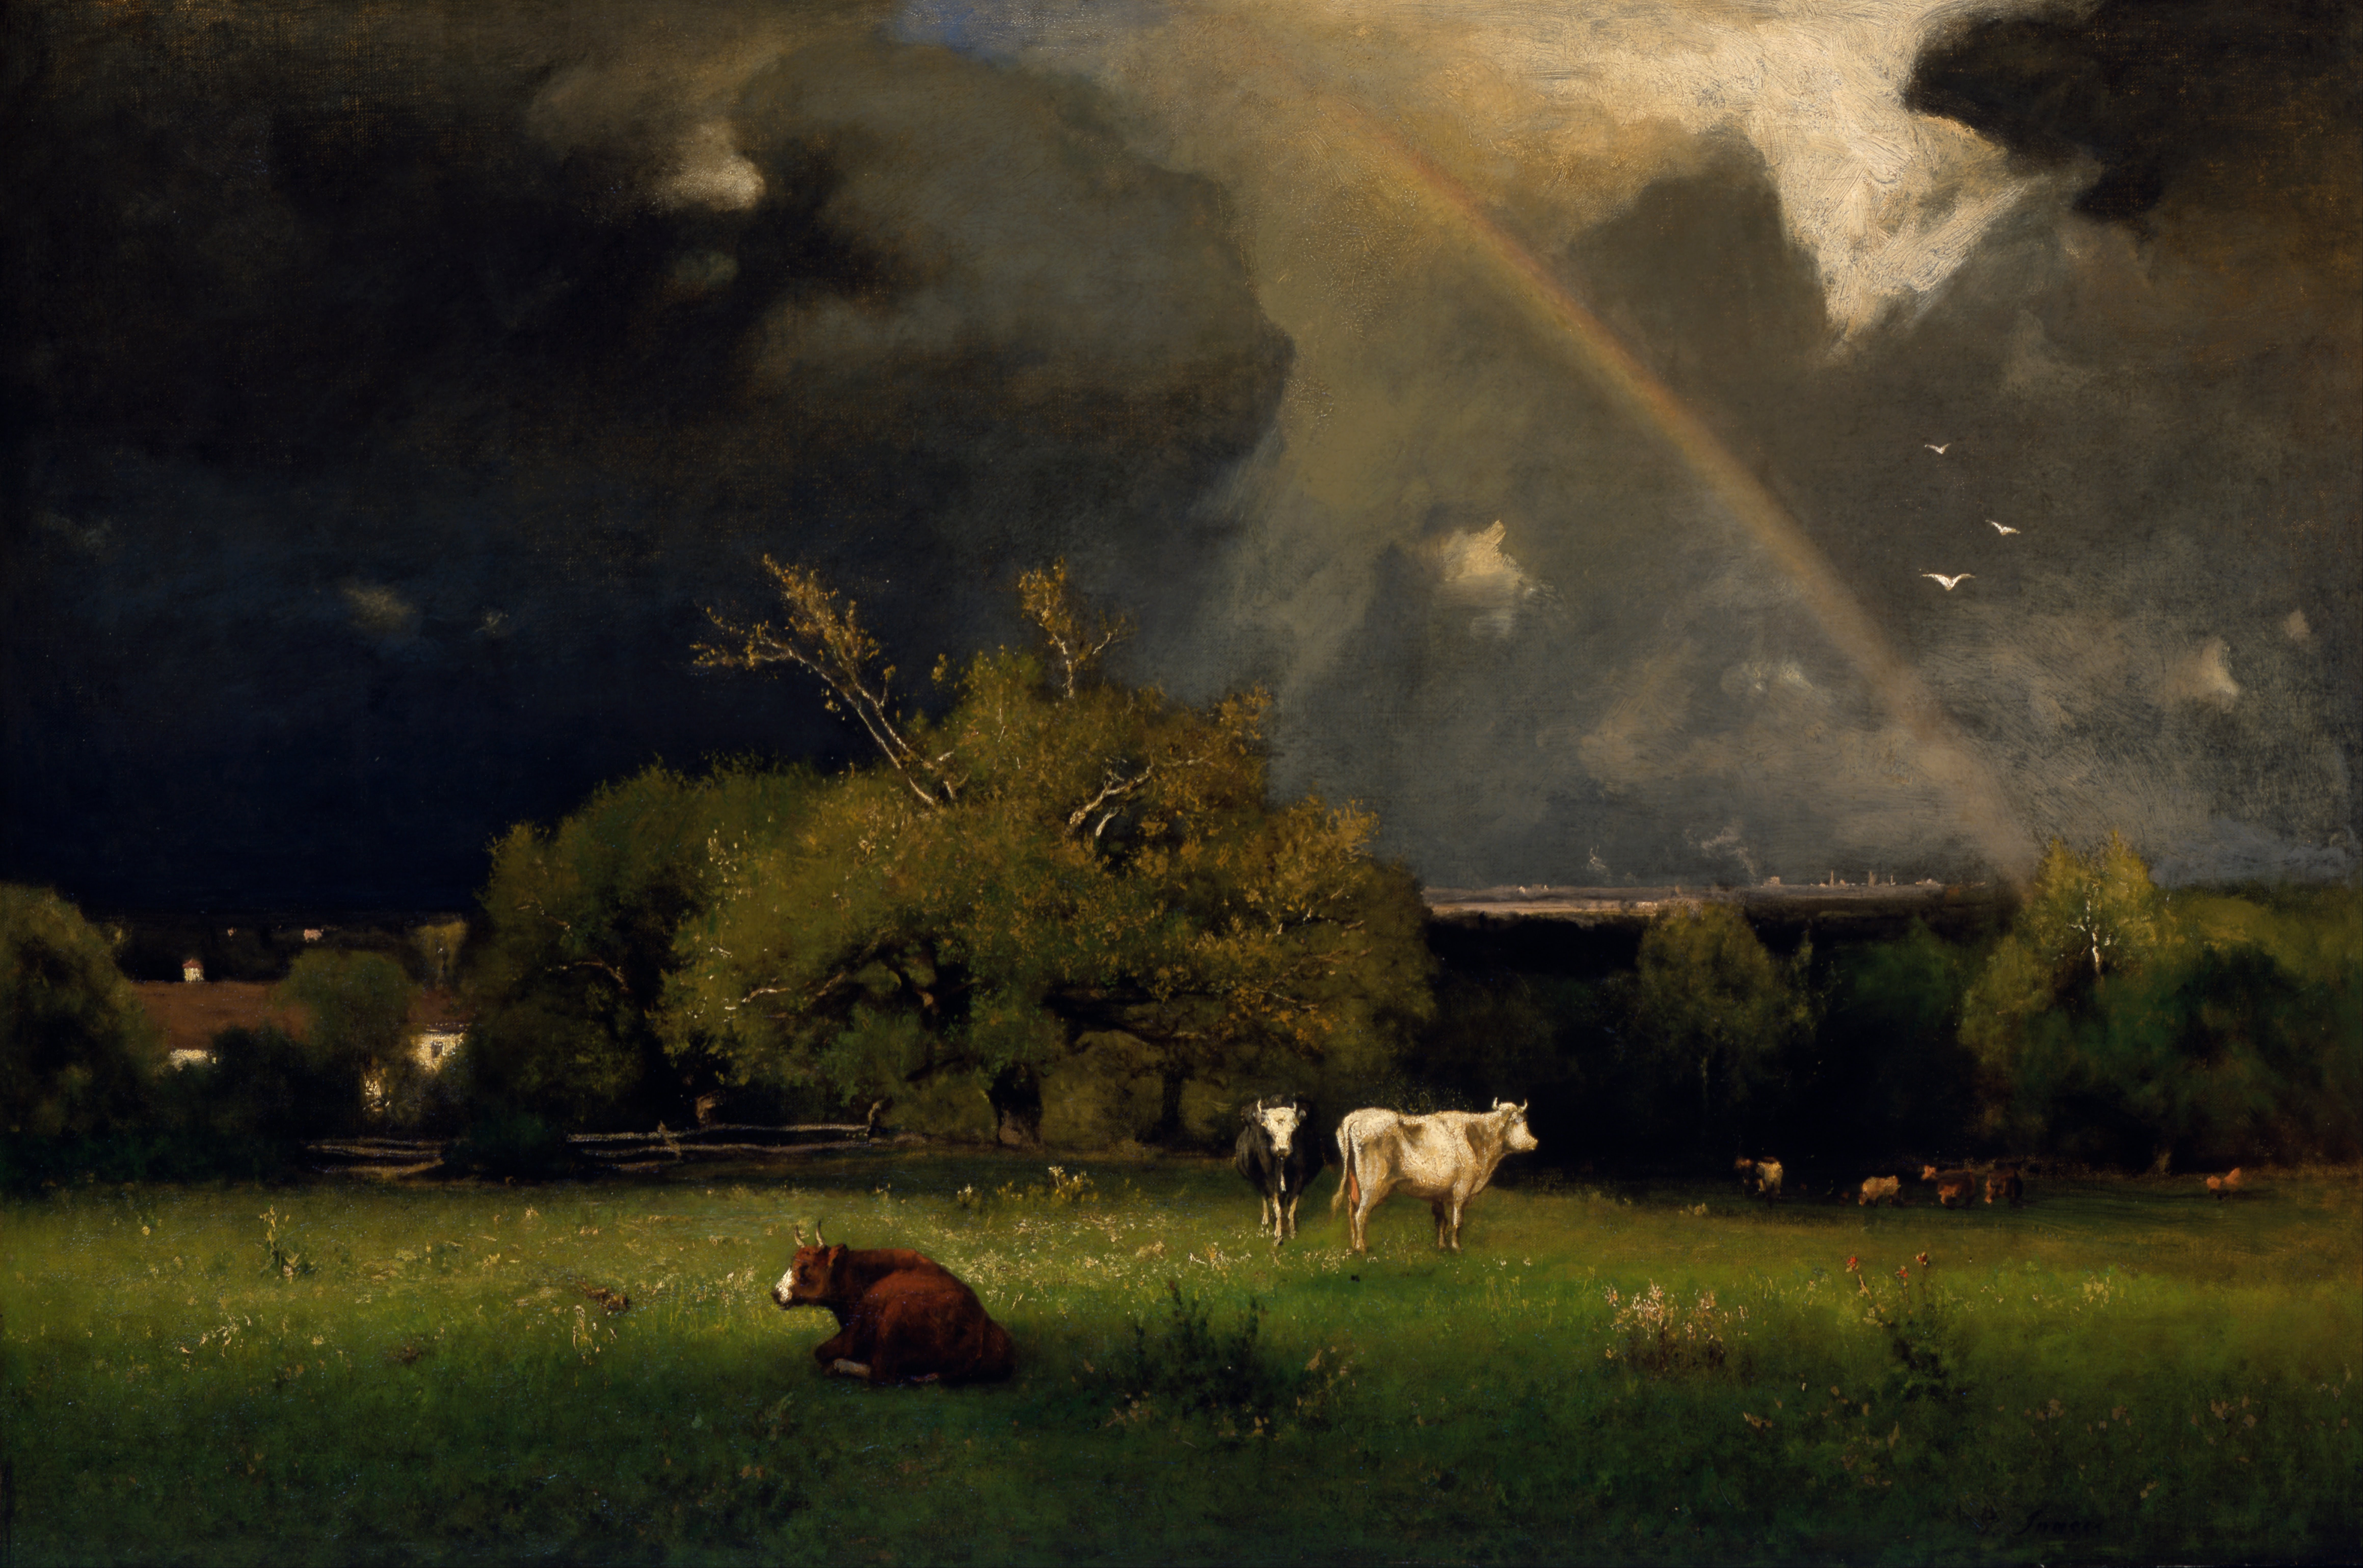 彩虹 by 乔治 英尼斯 - 大约 1878-1879 - 30 x 45 in 印第安纳波利斯艺术博物馆